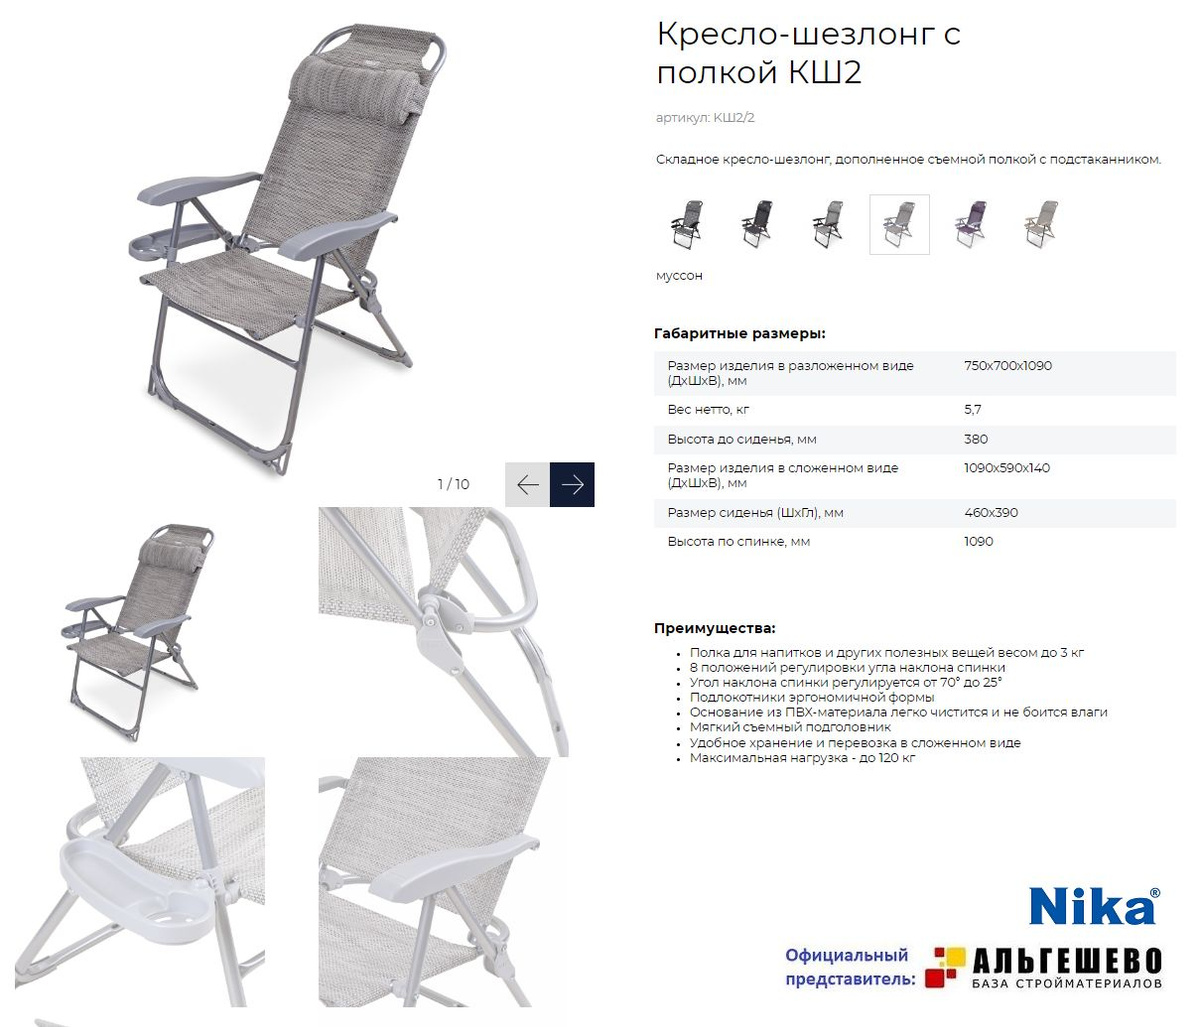 Складное кресло-шезлонг для комфортного отдыха на открытом воздухе и в помещении.